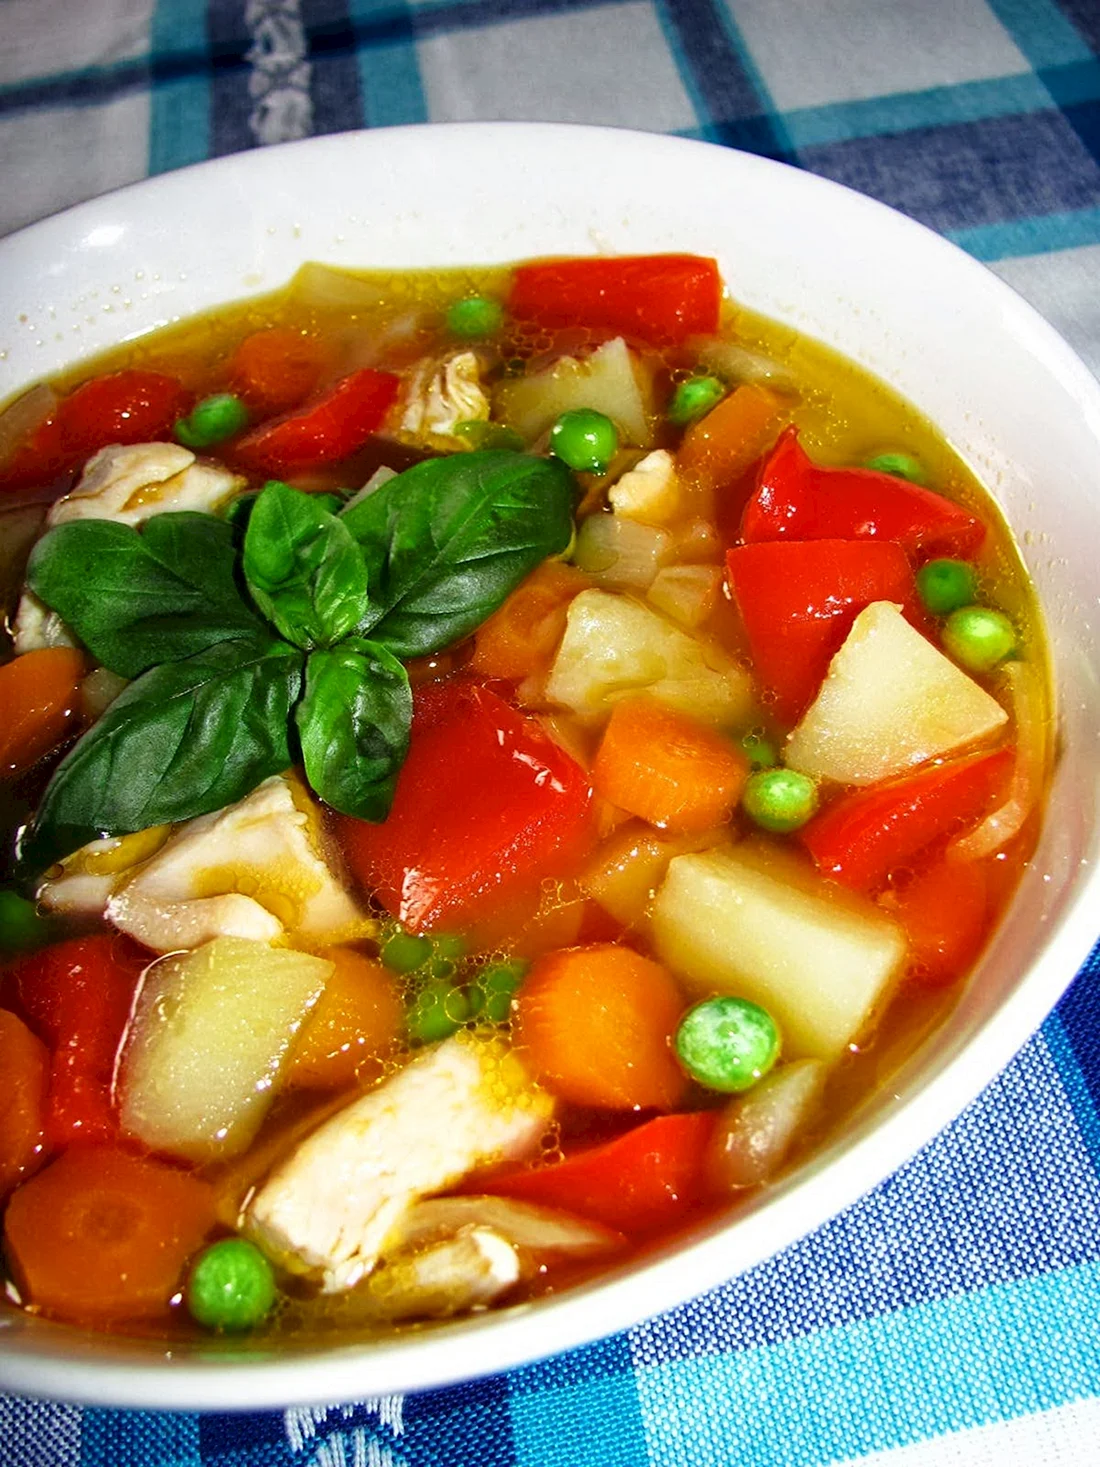 Овощной суп с болгарским перцем